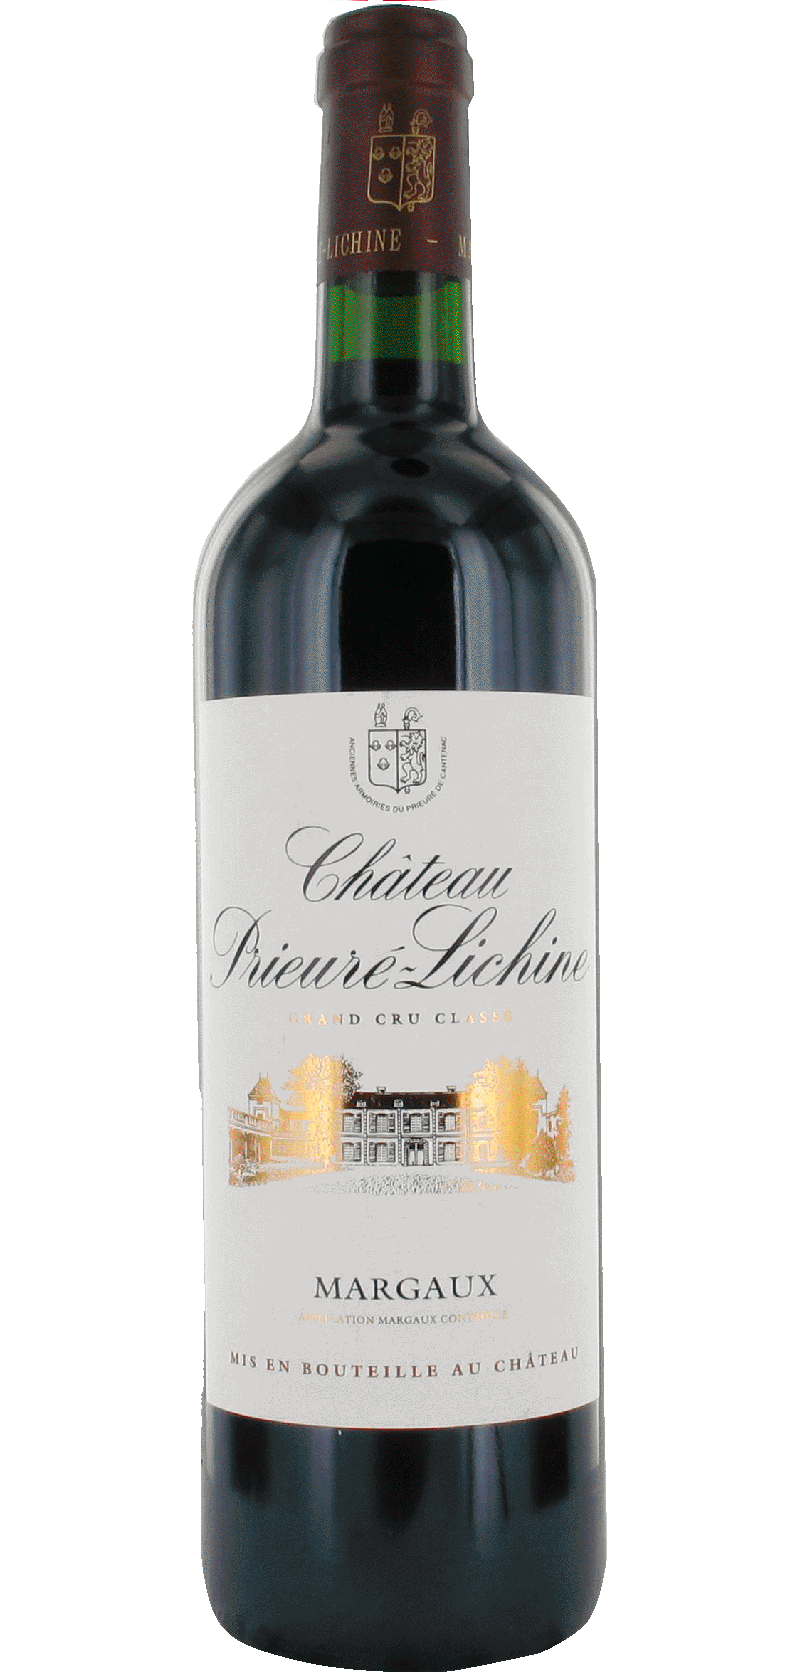 Château Prieuré Lichine – 2015 – Appellation Margaux – Vin rouge